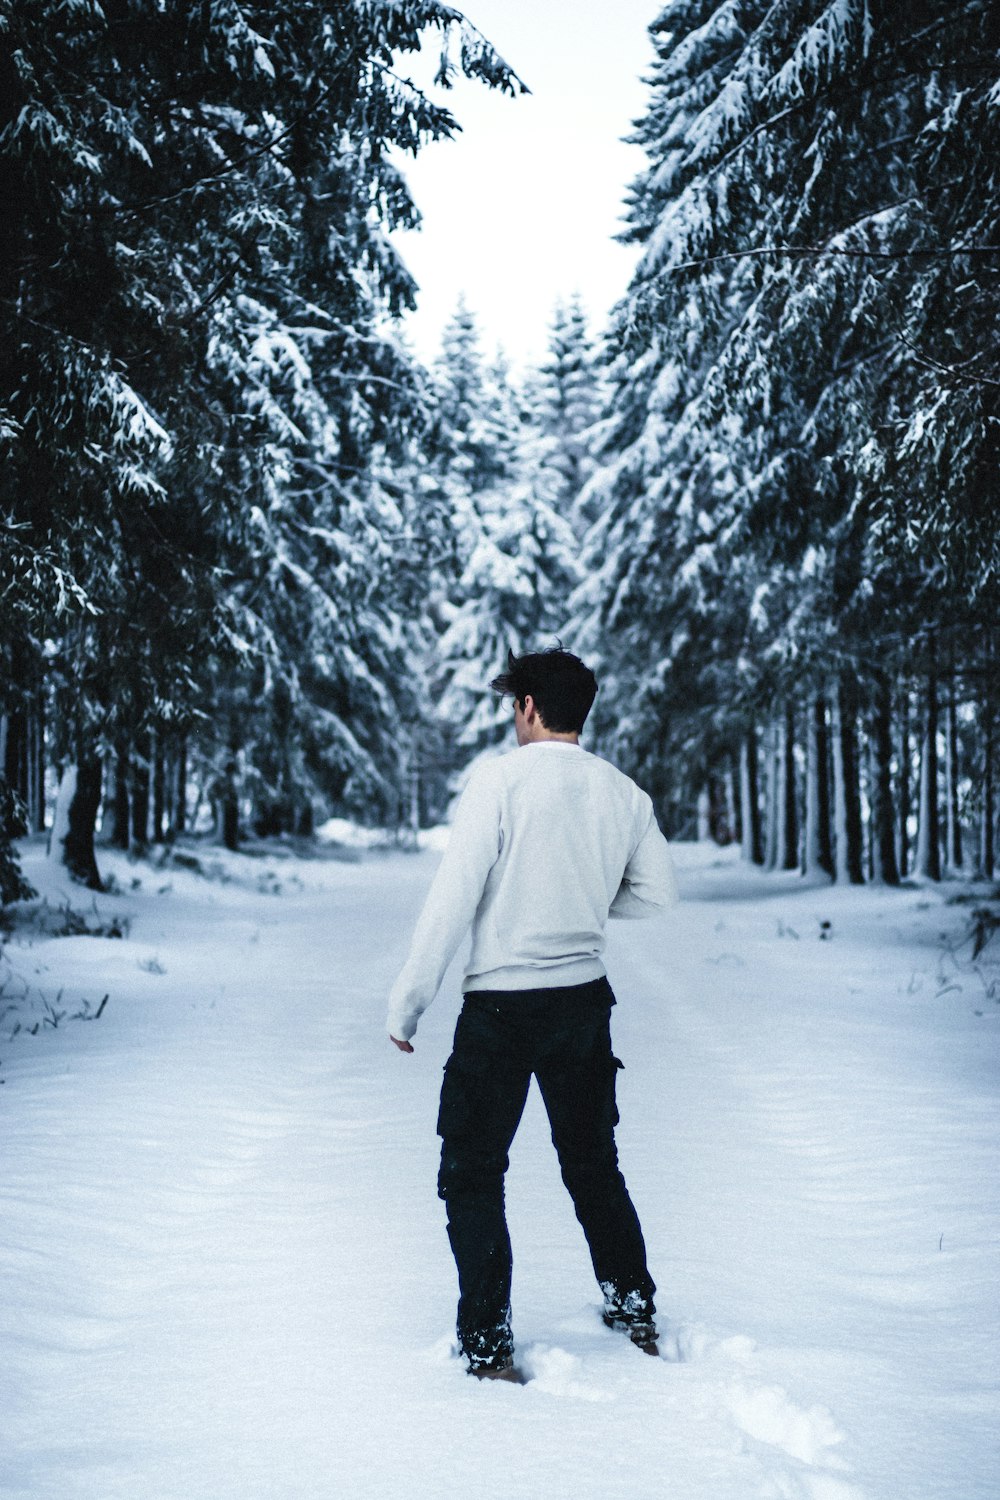 Mann in weißem Kapuzenpullover und schwarzer Hose, der tagsüber auf schneebedecktem Boden läuft